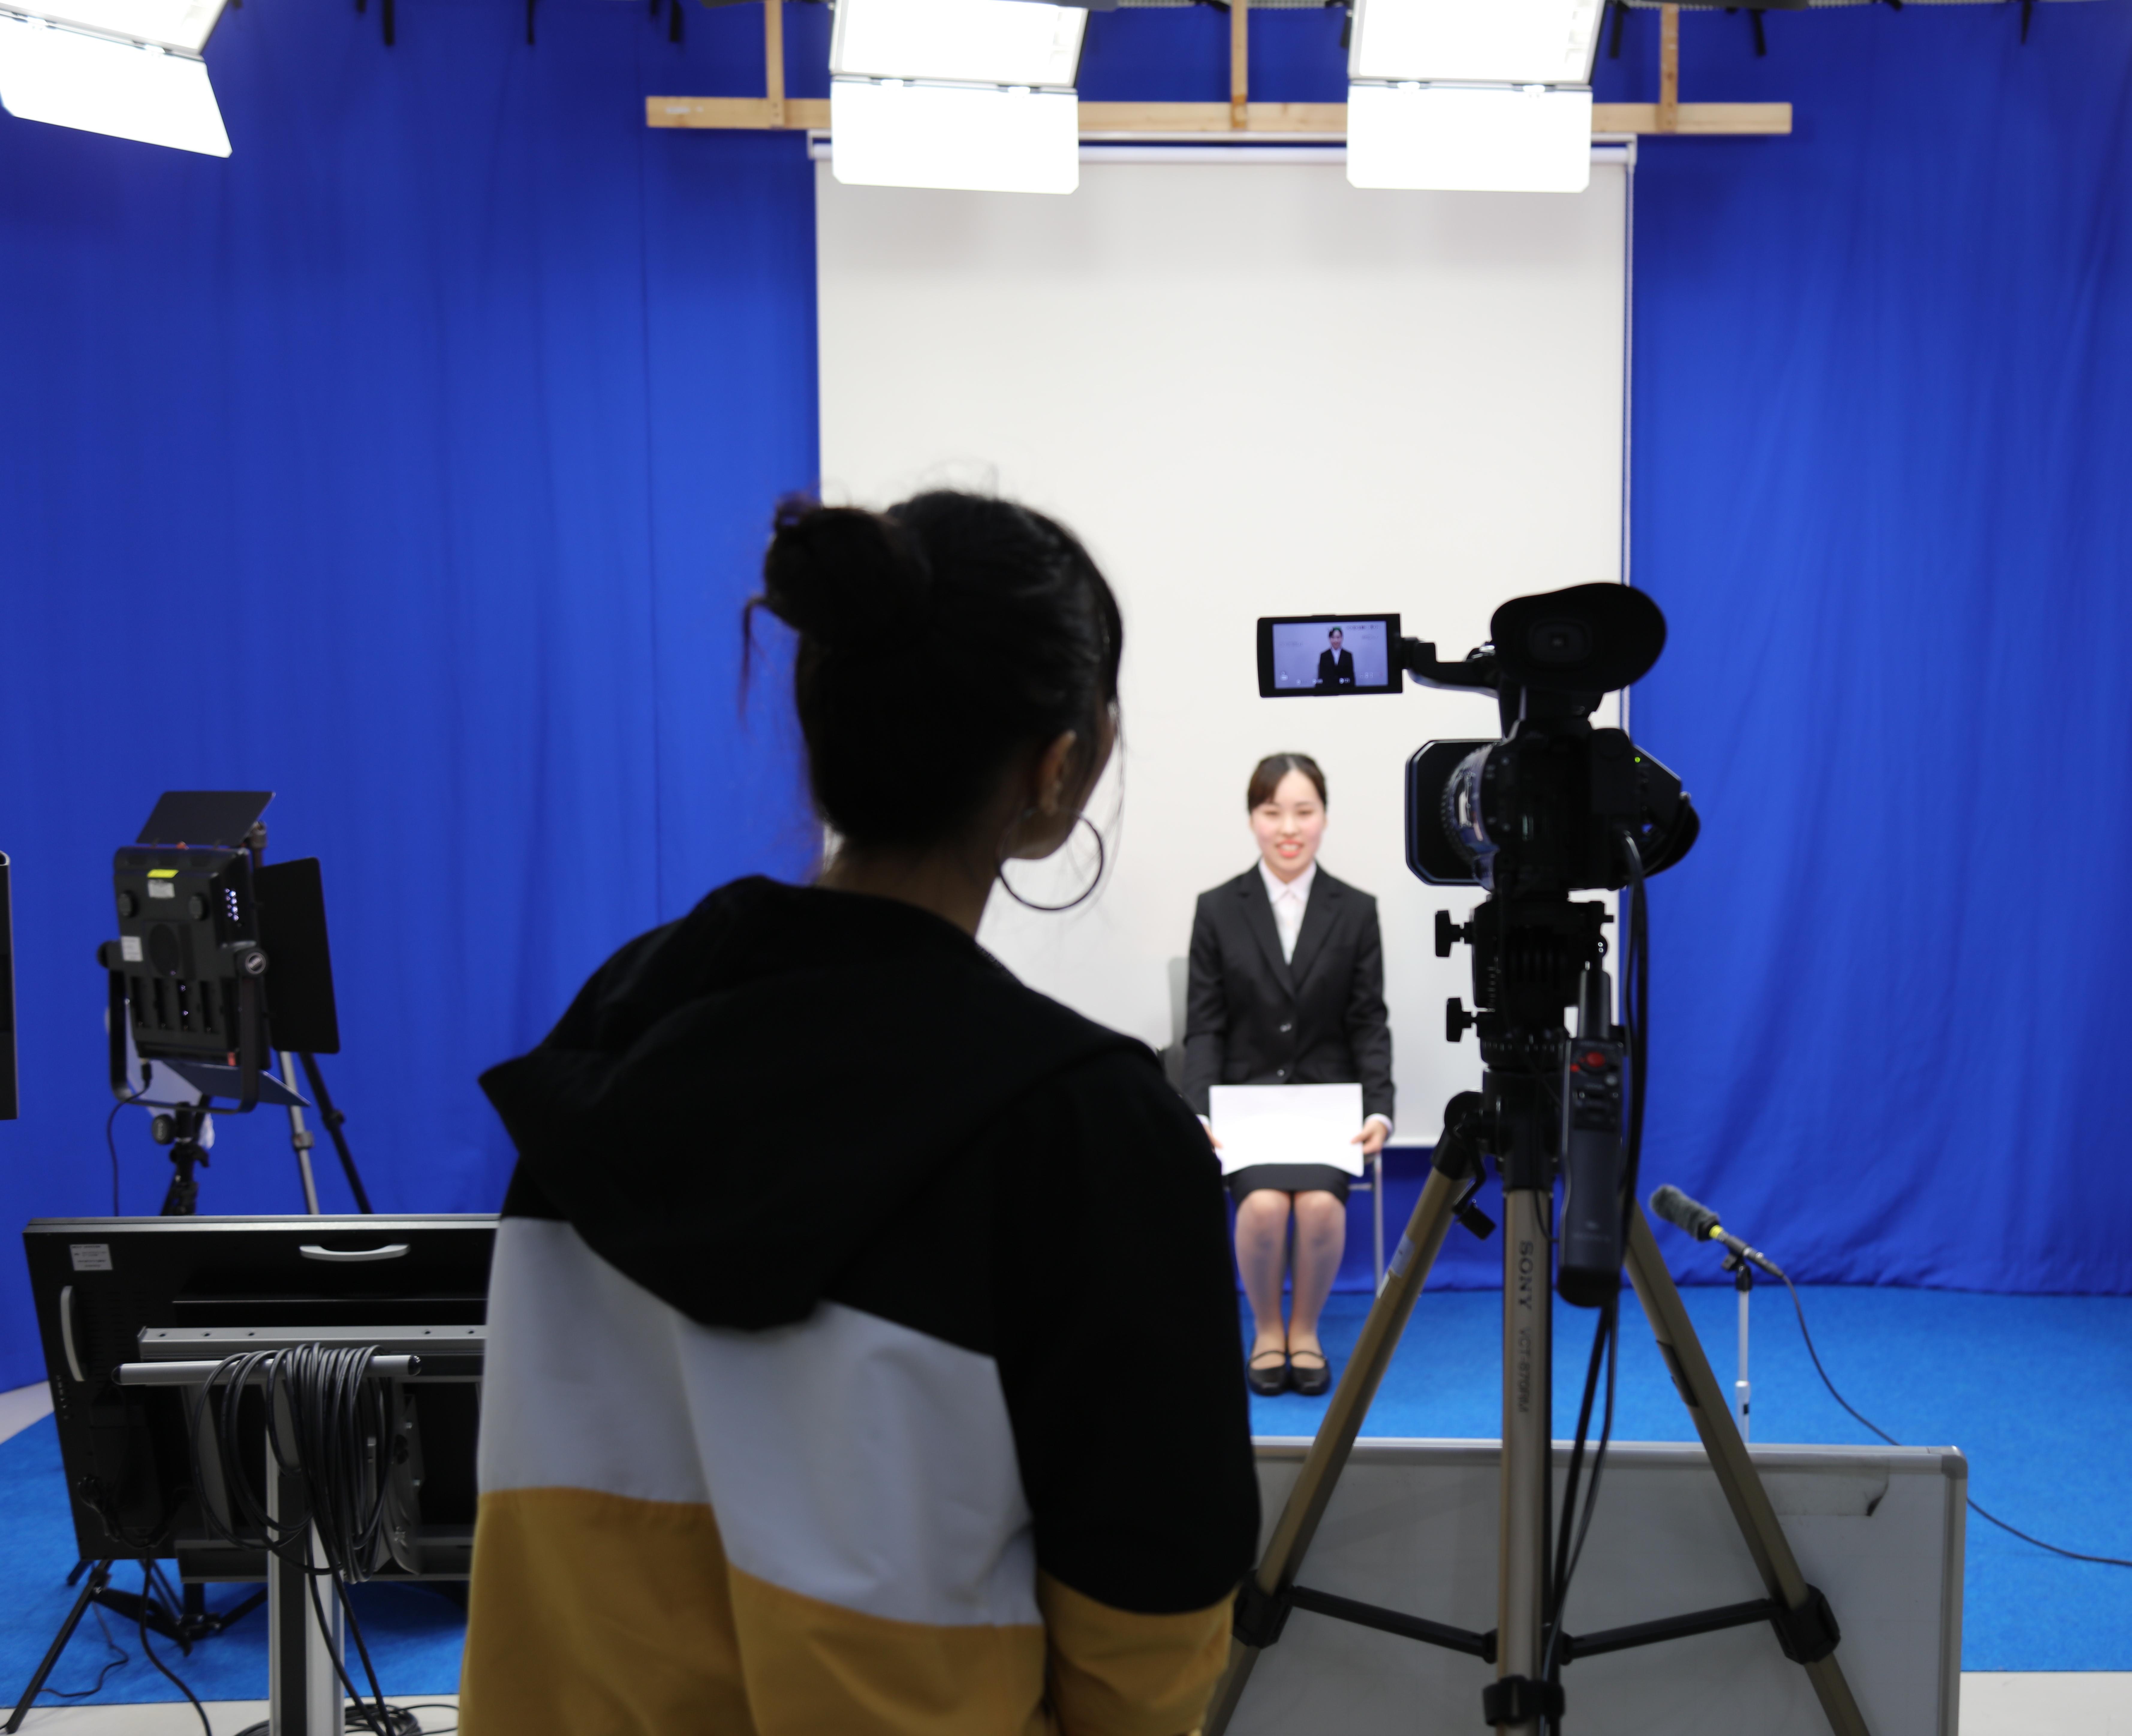 獨協大学が学内の撮影スタジオで就活用「自己PR動画」を撮影可能に -- 動画提出企業の増加に対応し、本格的な設備を提供